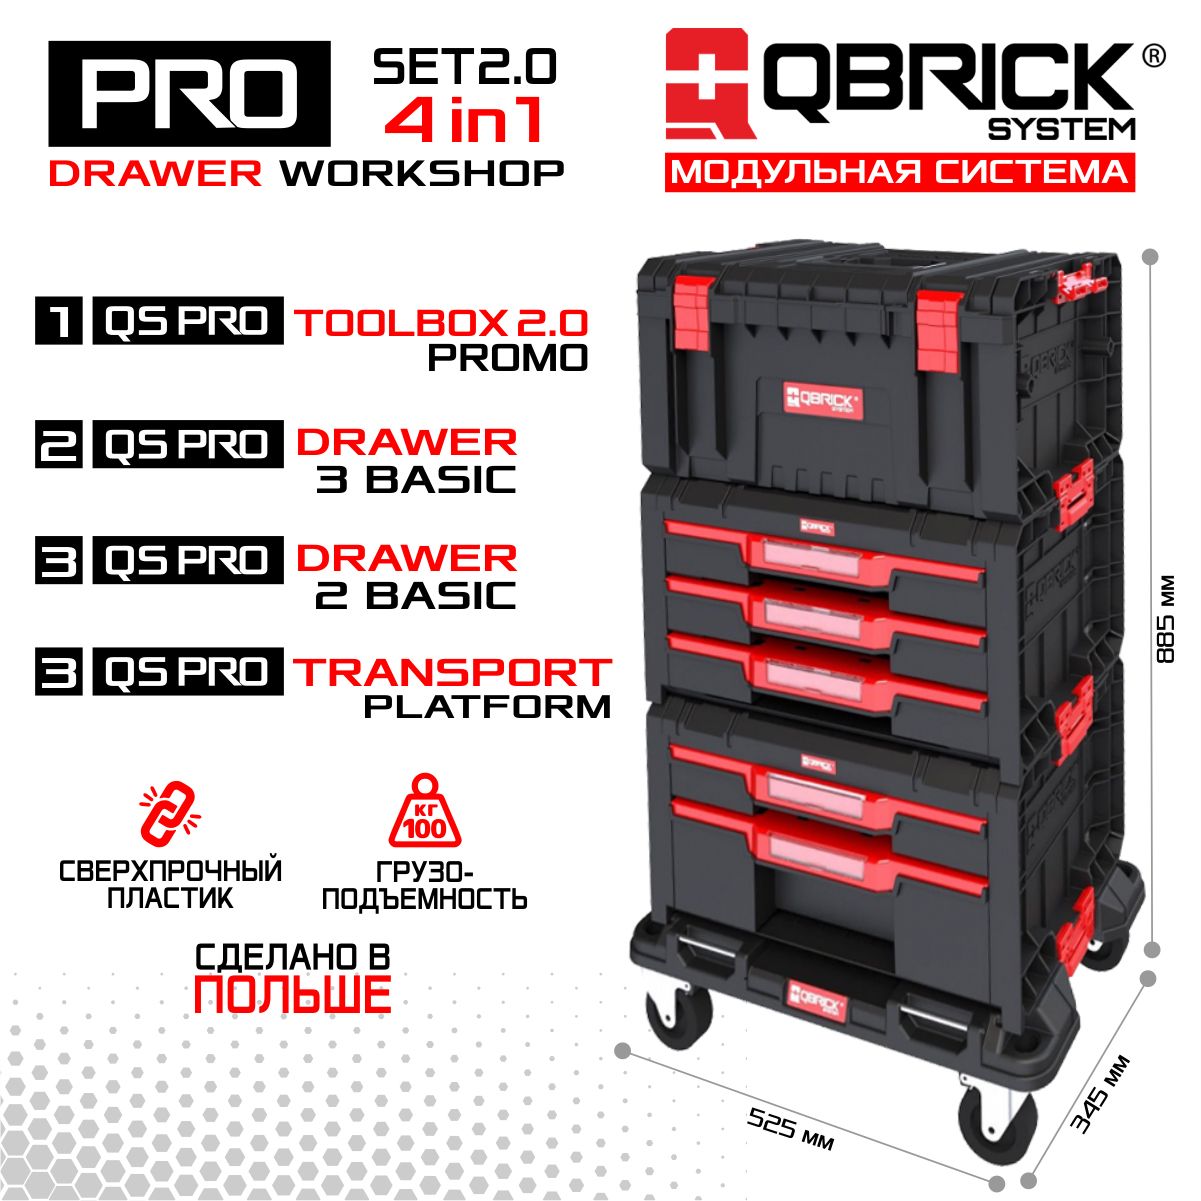 Набор ящиков для инструментов QBRICK SYSTEM PRO Drawer Workshop Set 2.0 платформа на колесах qbrick system one transport platform 745x510x180mm 10501237